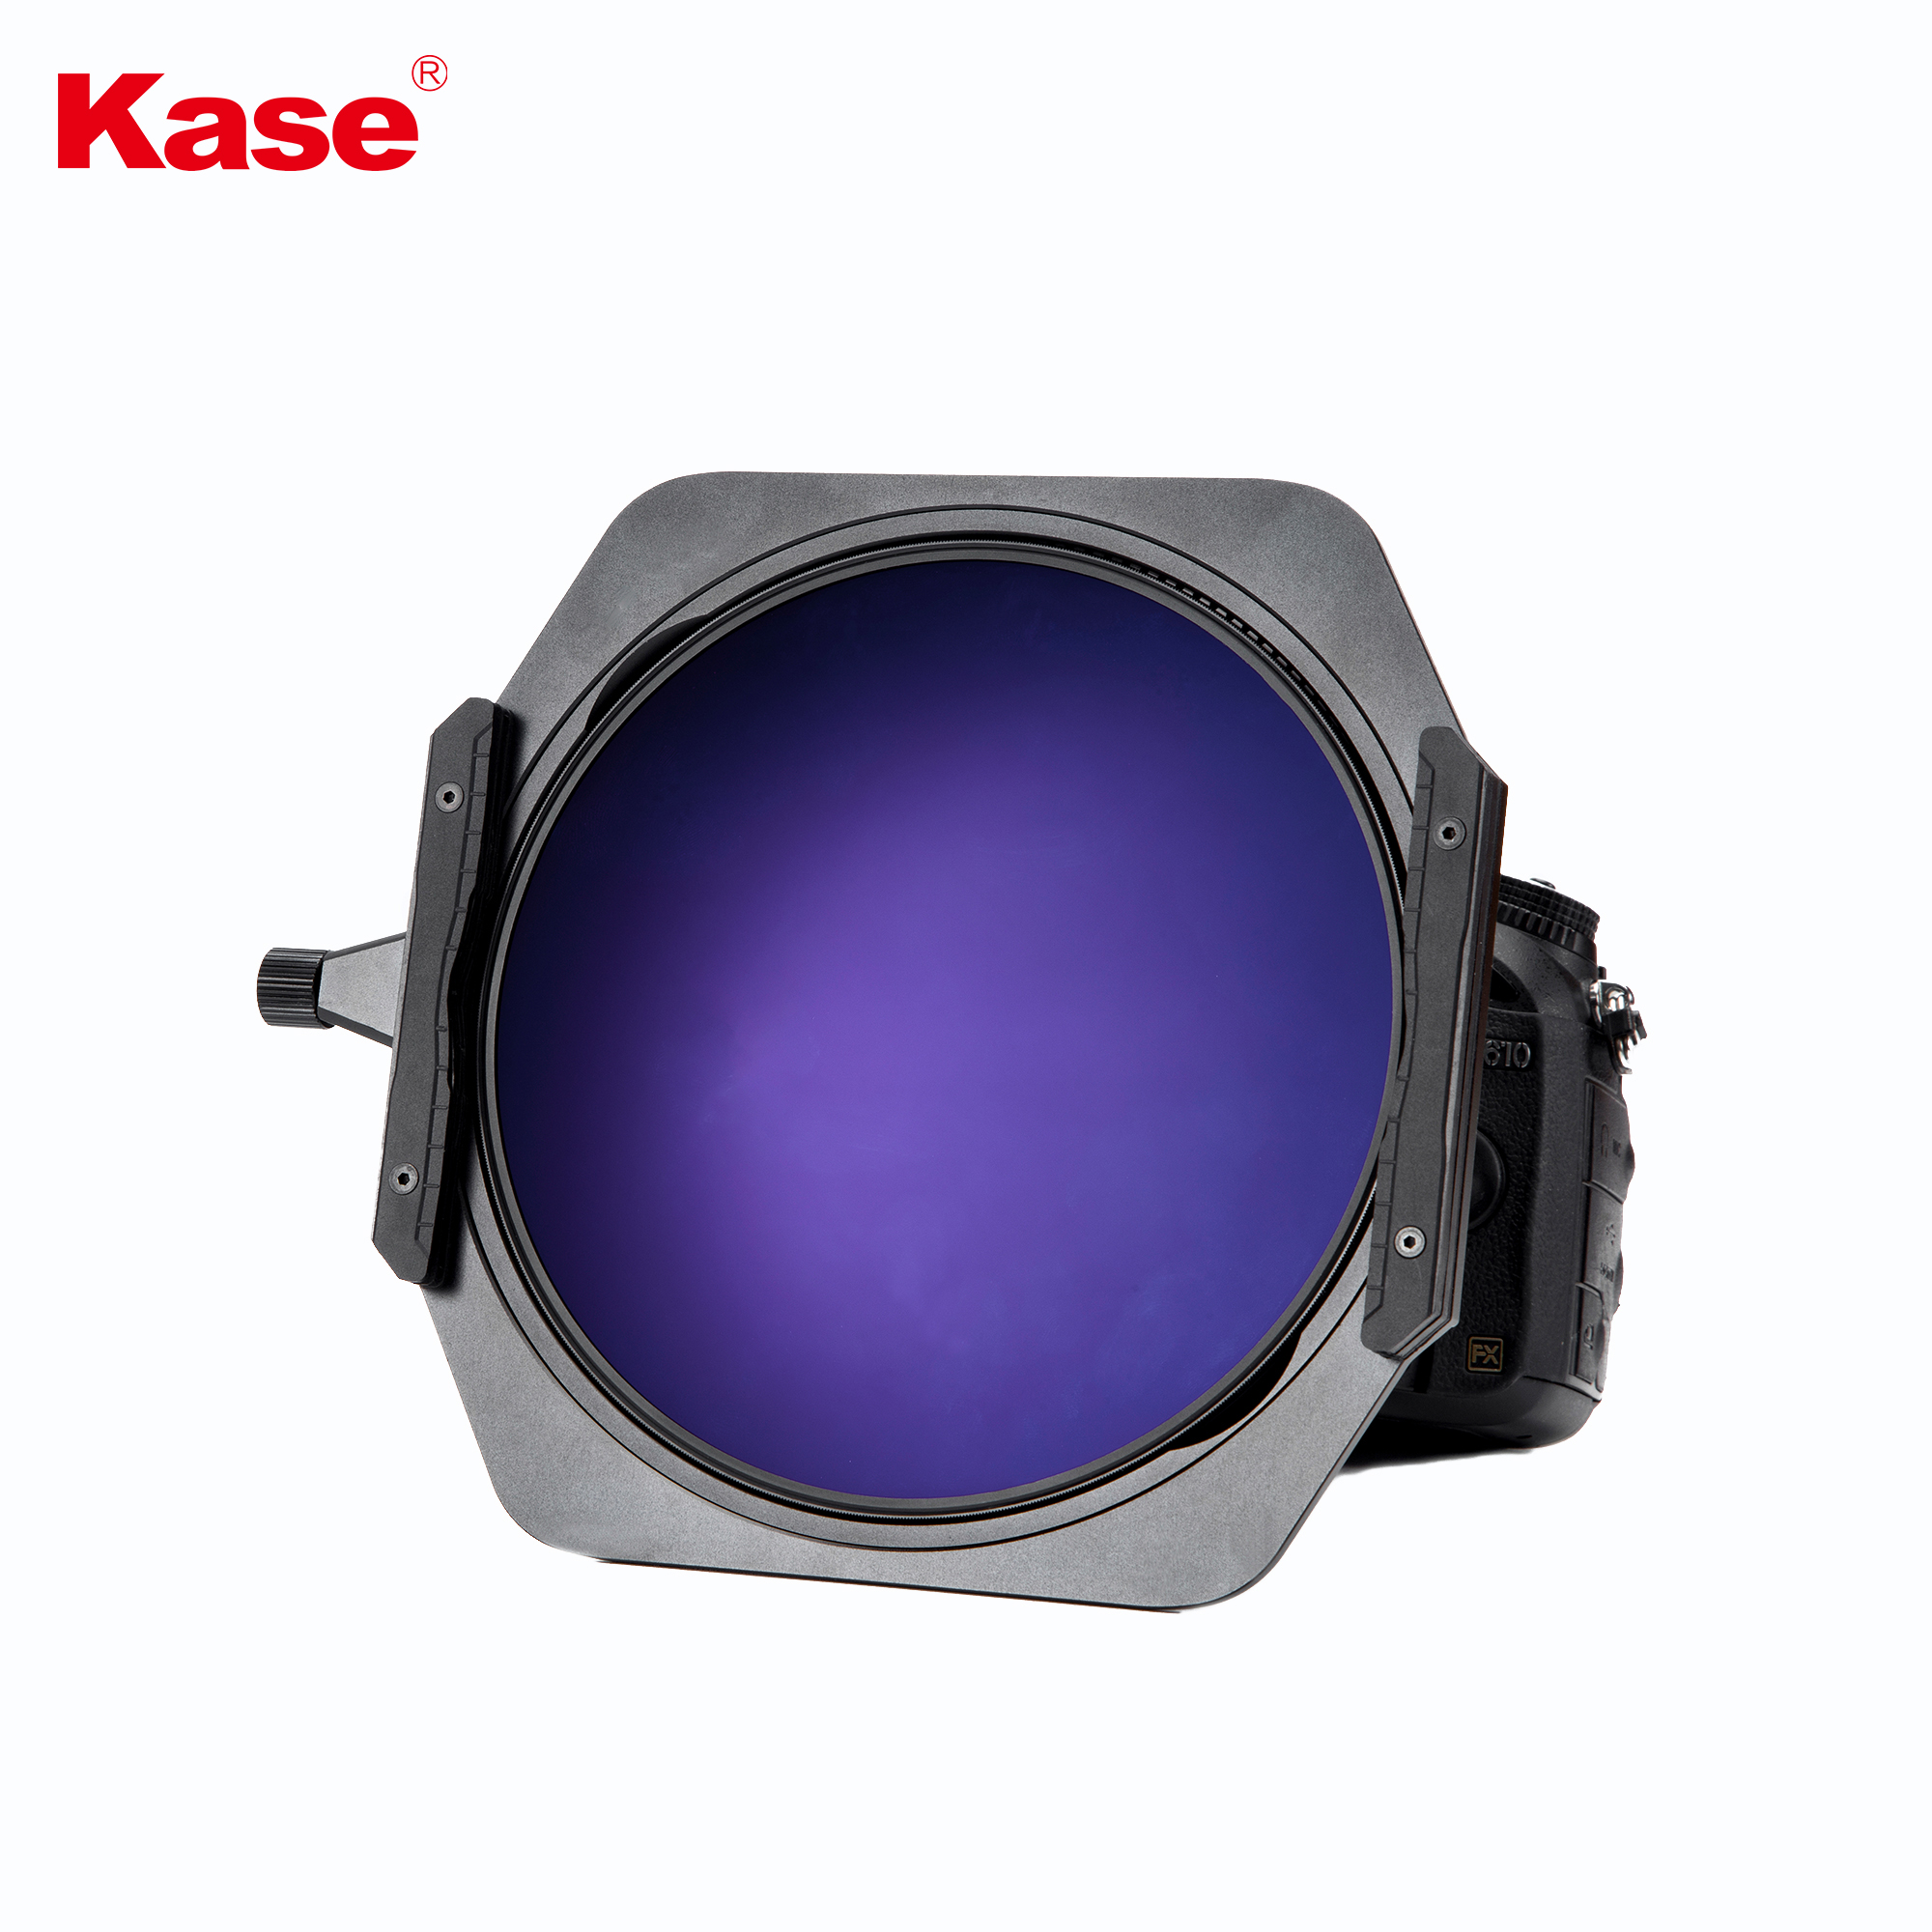 Kase K150P Filter Holder for Fuji 8-16mm Lens